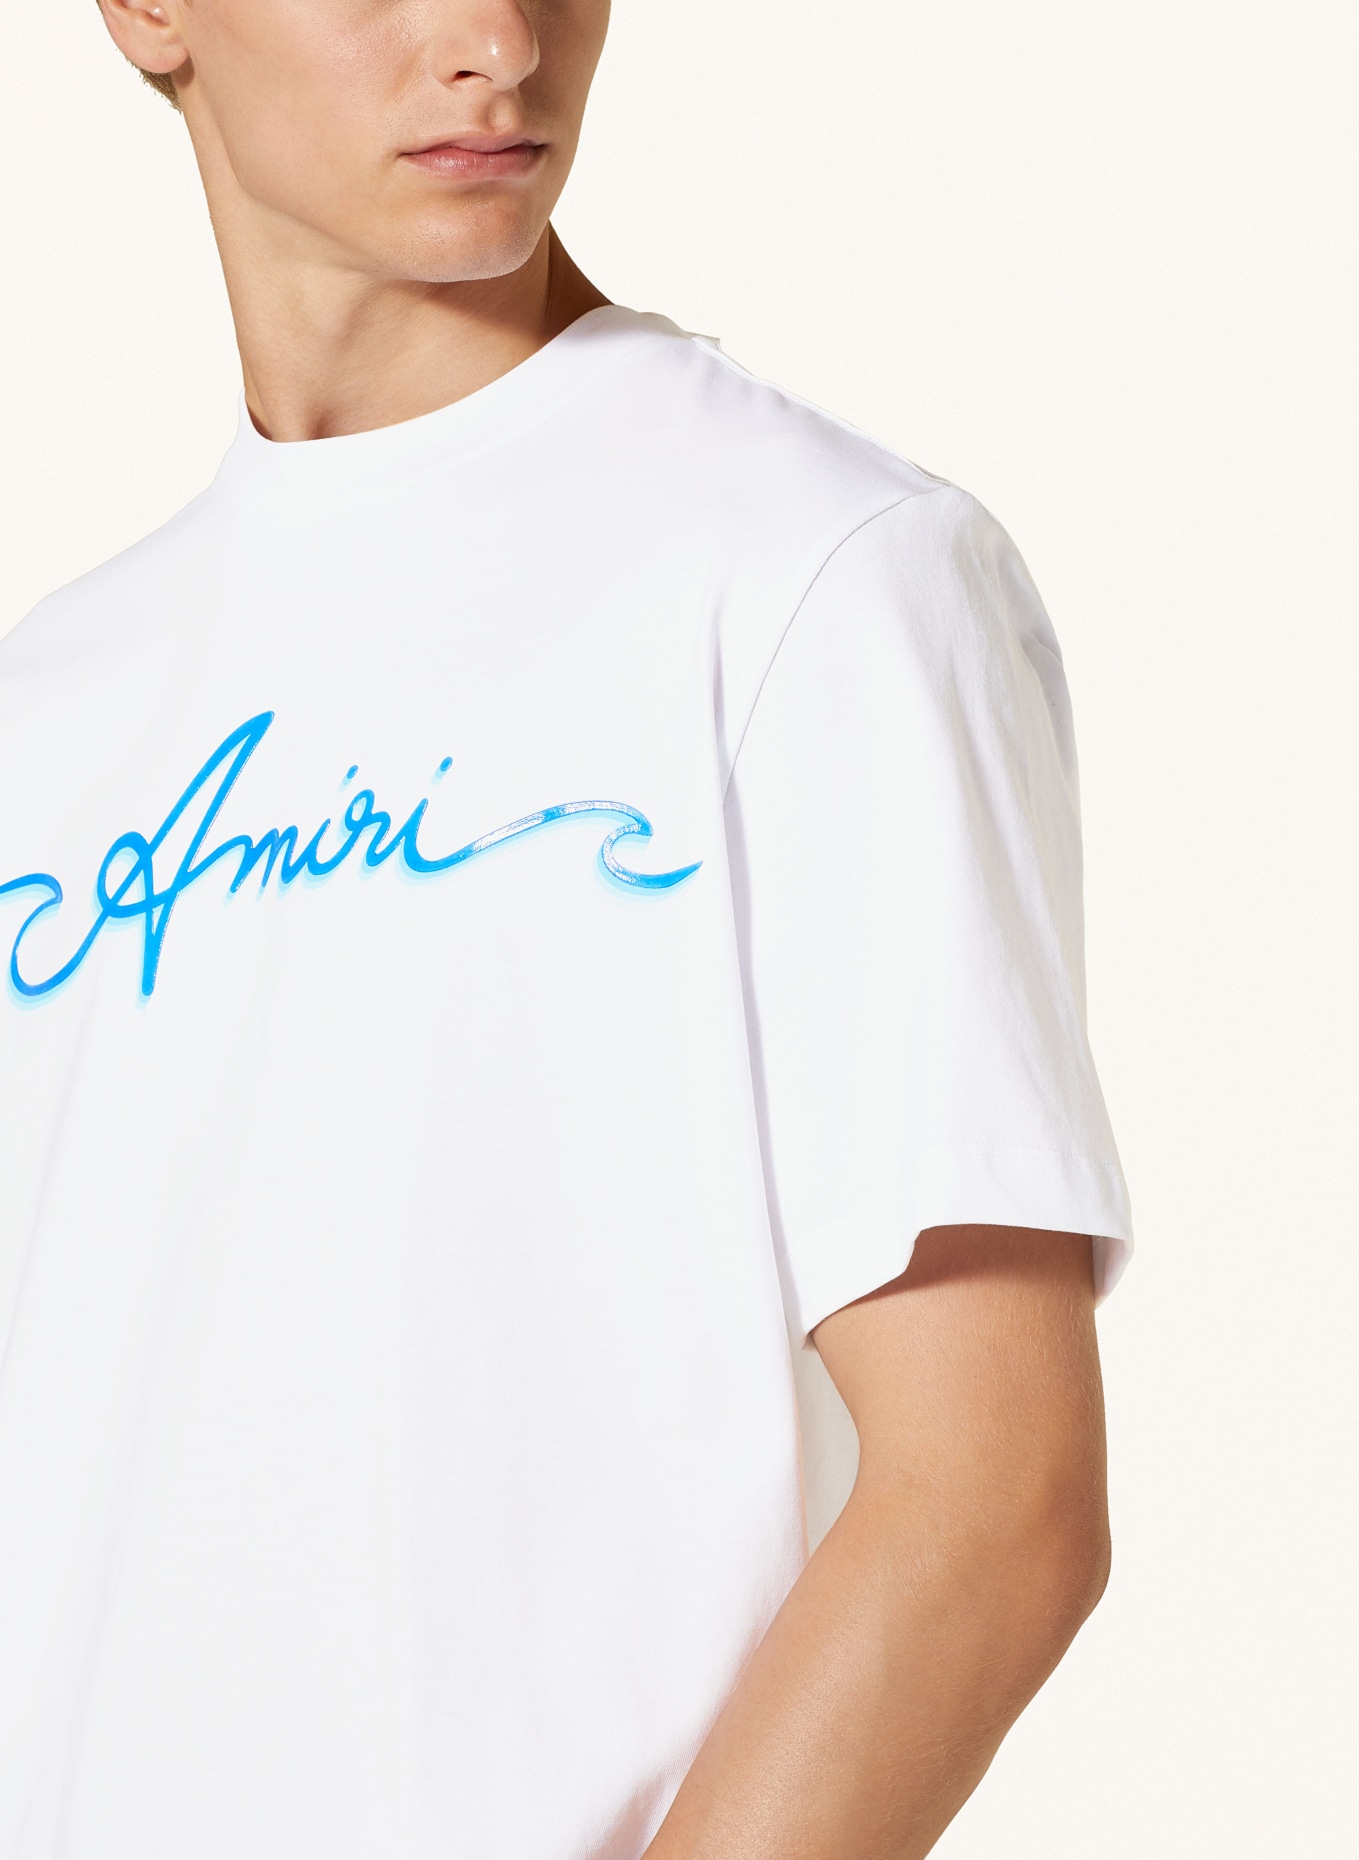 AMIRI T-Shirt, Farbe: WEISS (Bild 4)